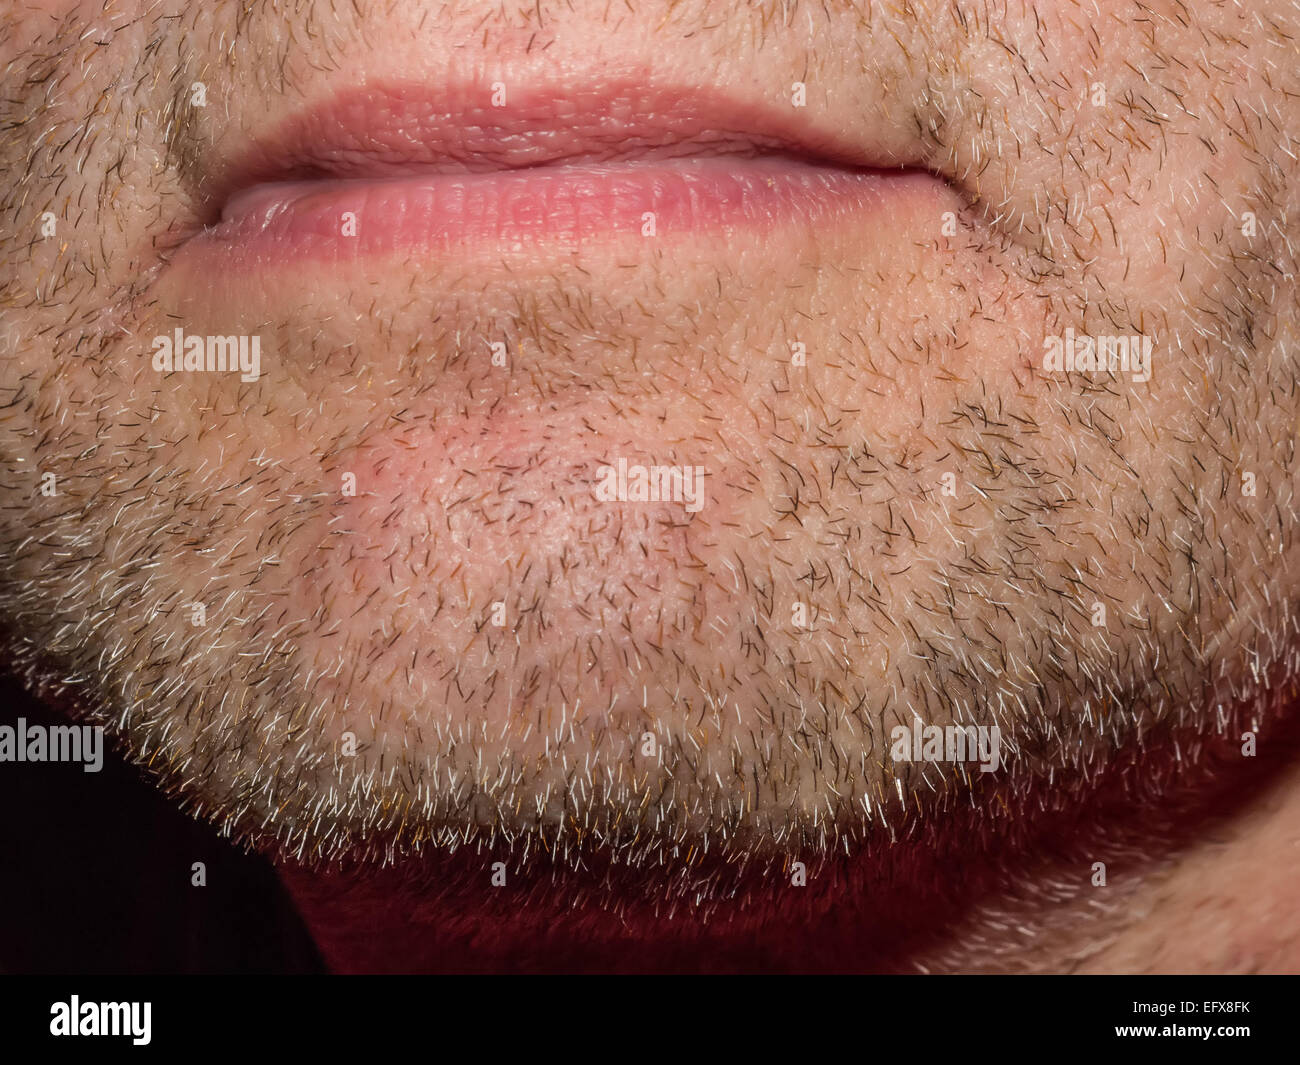 Makro Nahaufnahme ein stark bartstoppeligen männliche Kinn zeigen Bartwuchs. Modell ist nicht identifizierbar. Nur Kinn und Mund gezeigt. Stockfoto